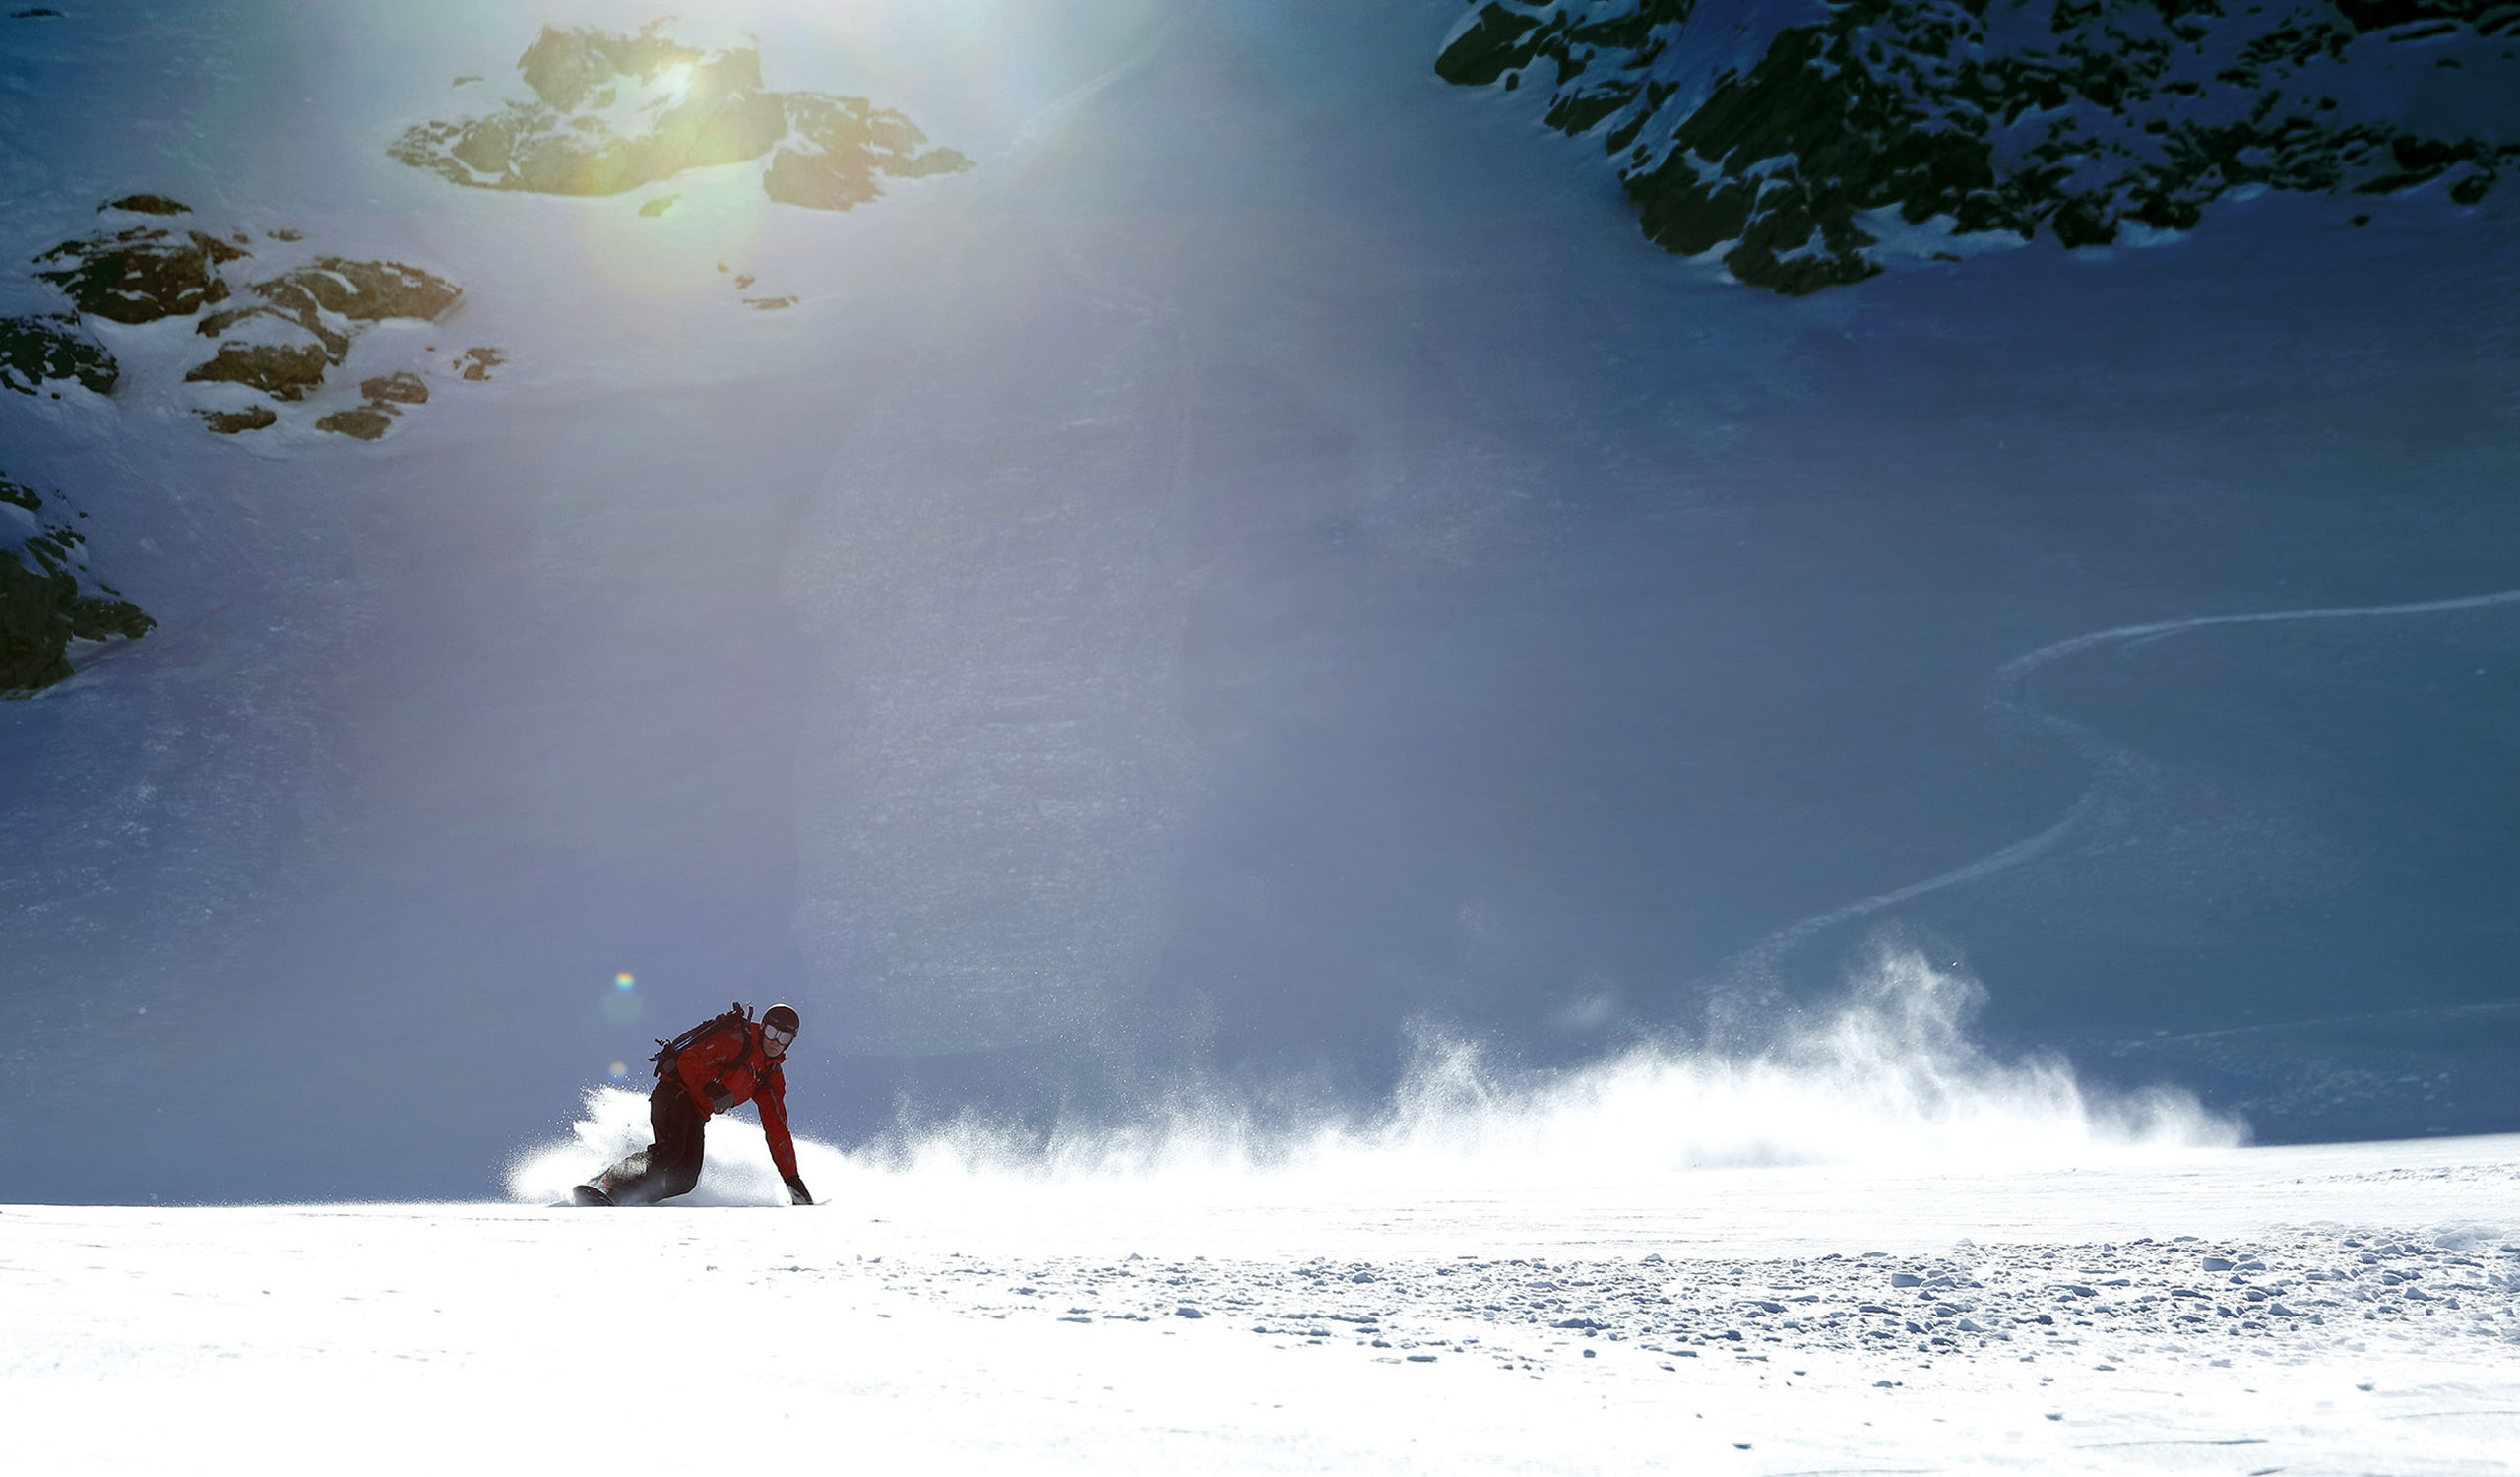 Snowboarden in der Schweiz. Der Wintersport ist in den Schweizer Alpen sehr beliebt. Snowboarder und Skifahrer durchqueren das Hinterland auf der Suche nach Abenteuer. Es gibt Zeiten im Winter, in denen die Berge vom Abenteuer sprechen. Der Wind weht warm aus dem Süden, um die kommenden Veränderungen anzukündigen, die Sonne verweilt noch ein wenig länger, aber dennoch schenkt der Himmel in seiner sanften Liebenswürdigkeit diesen Ländern einen frischen Spritzer unberührten Pulvers. Dies sind die Tage des Zuckers.